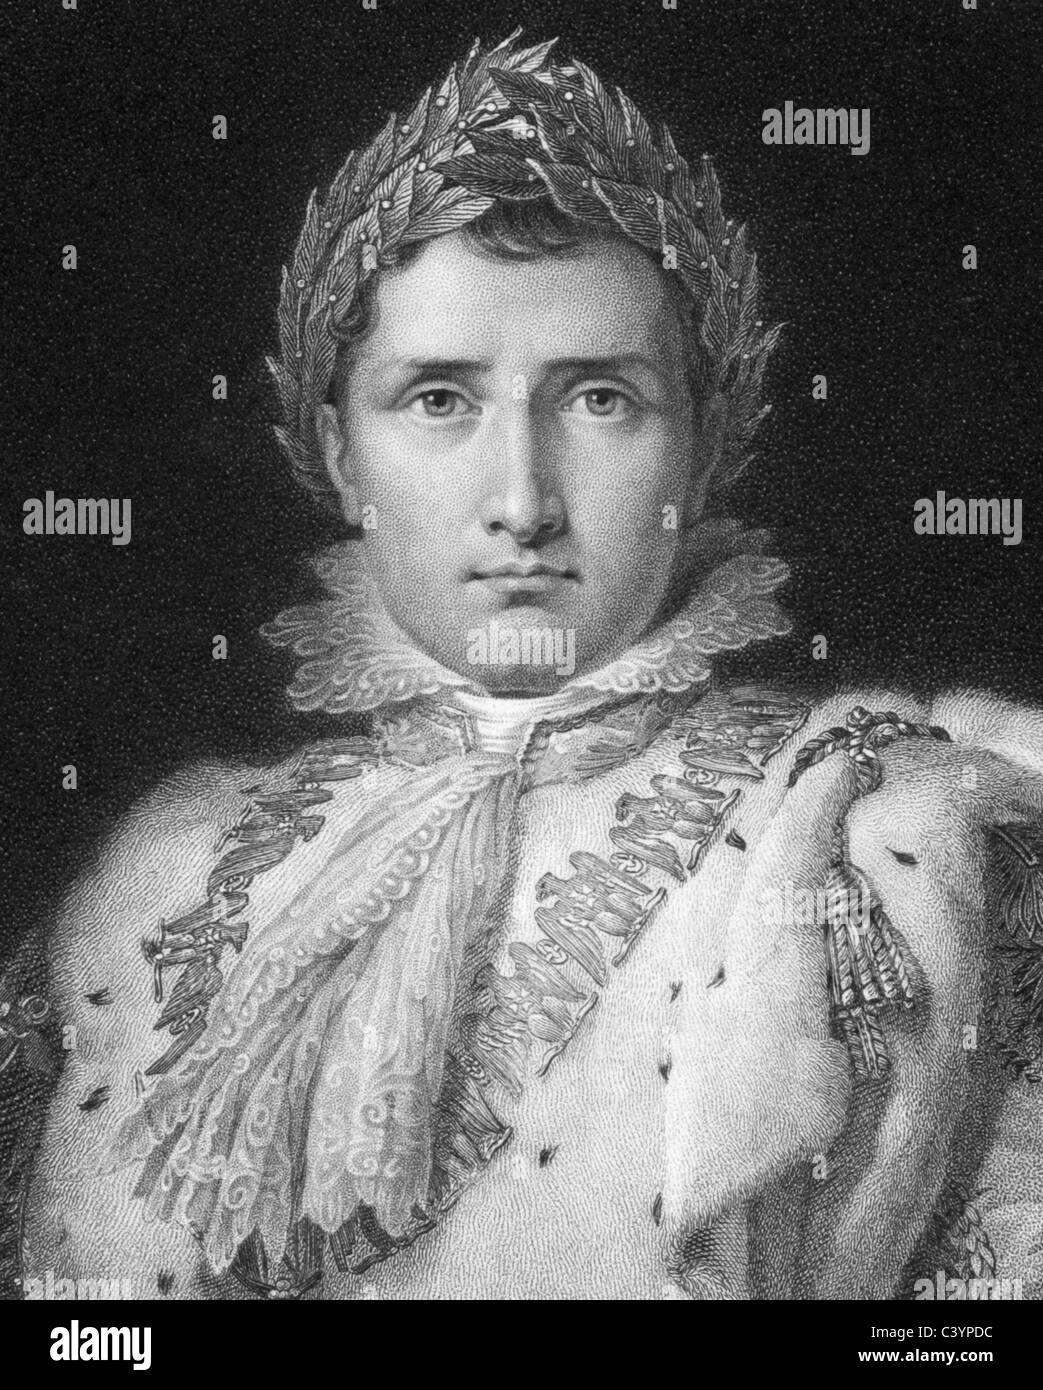 Napoleón Bonaparte (1769-1821) sobre el grabado desde 1800. El emperador de Francia. Foto de stock